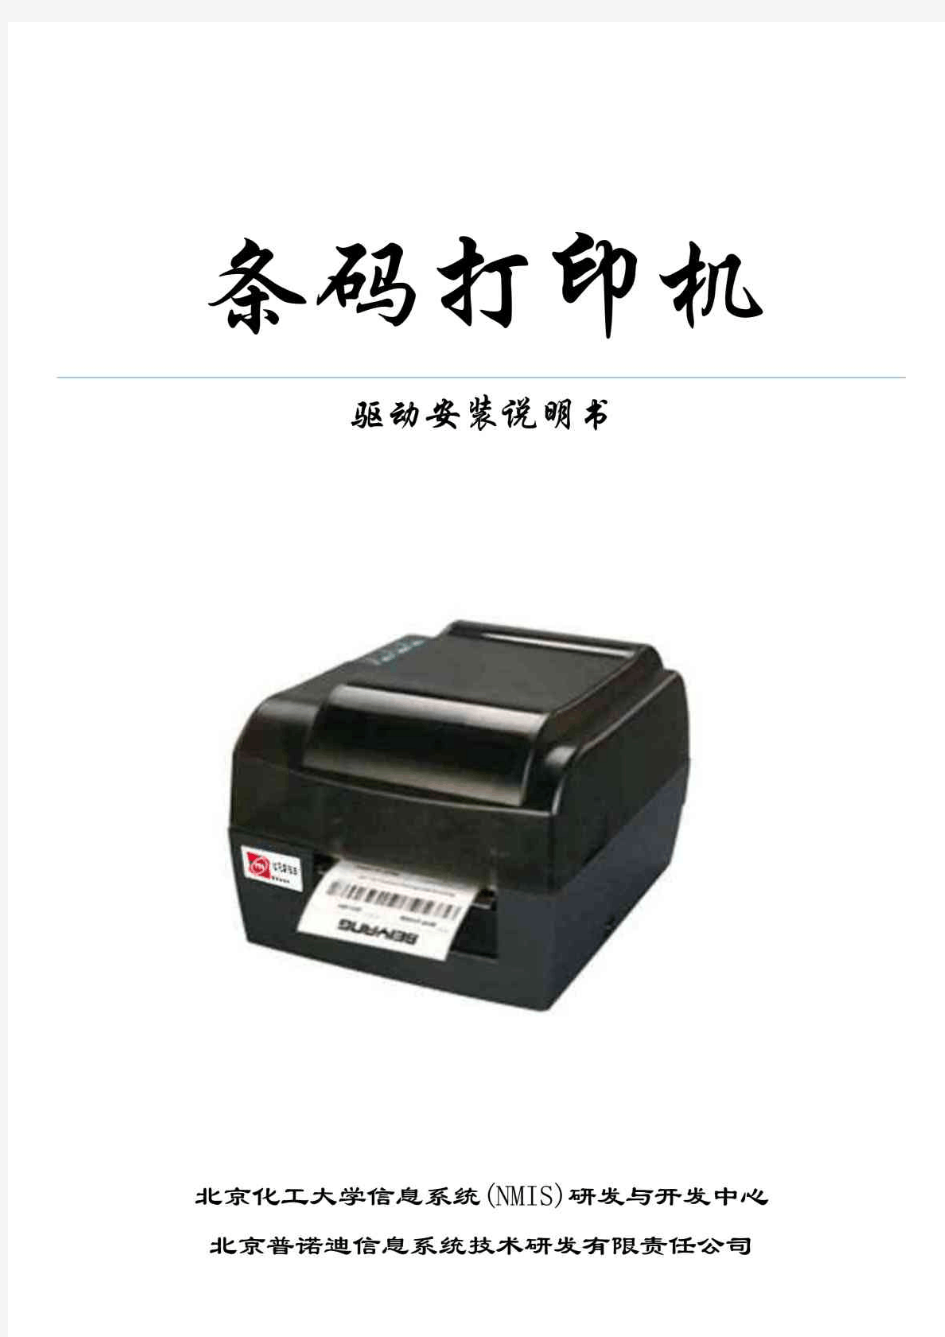 PRD-P3800打印机使用操作说明doc - 新北洋打印机